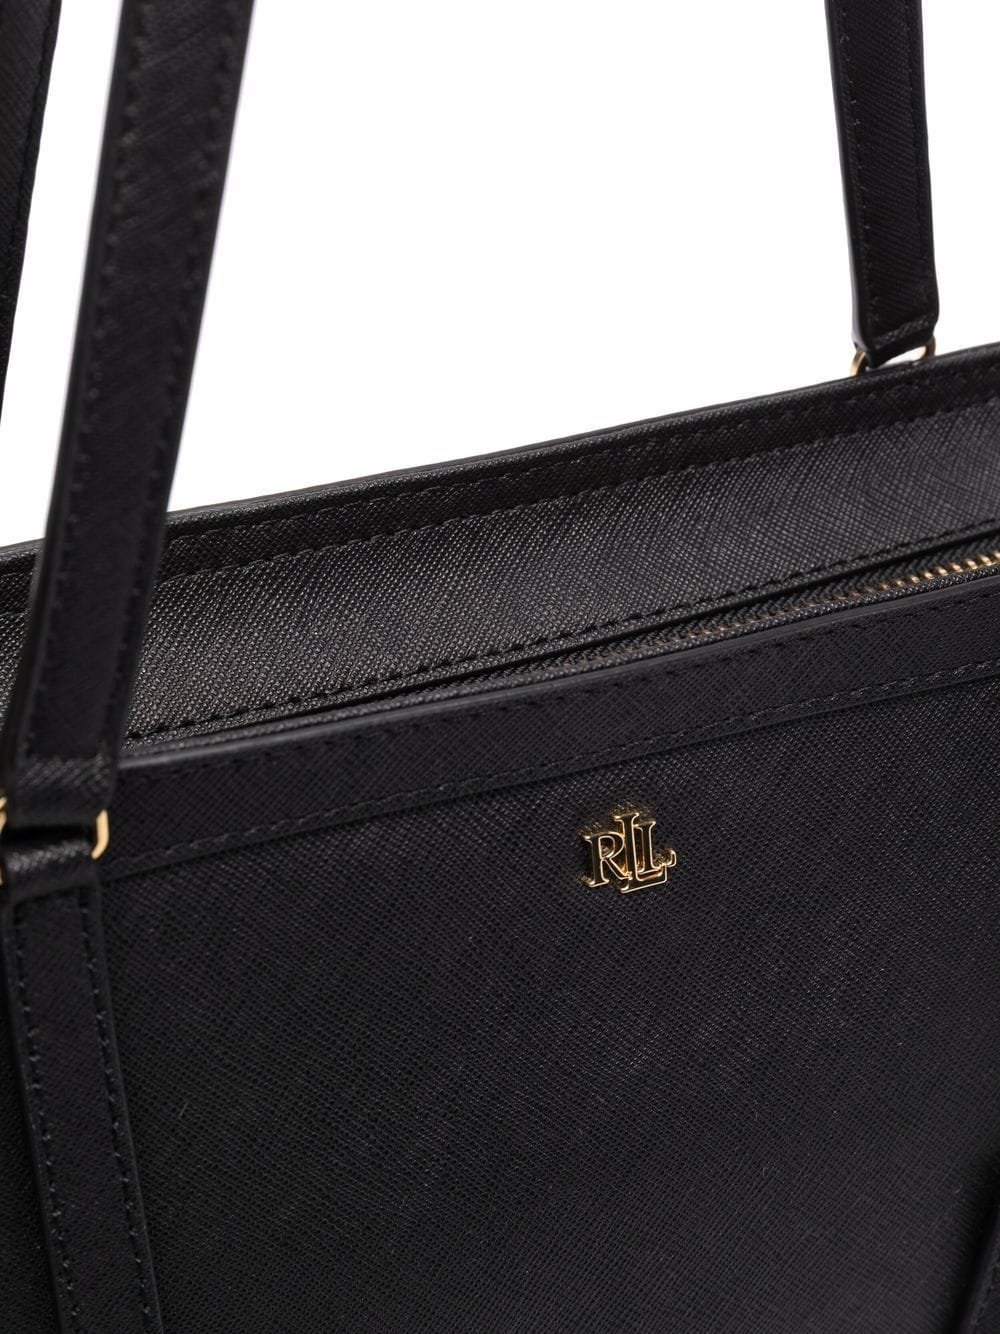 Lauren Ralph Lauren Navy Crosshatch Leather Medium Clare Tote Bag